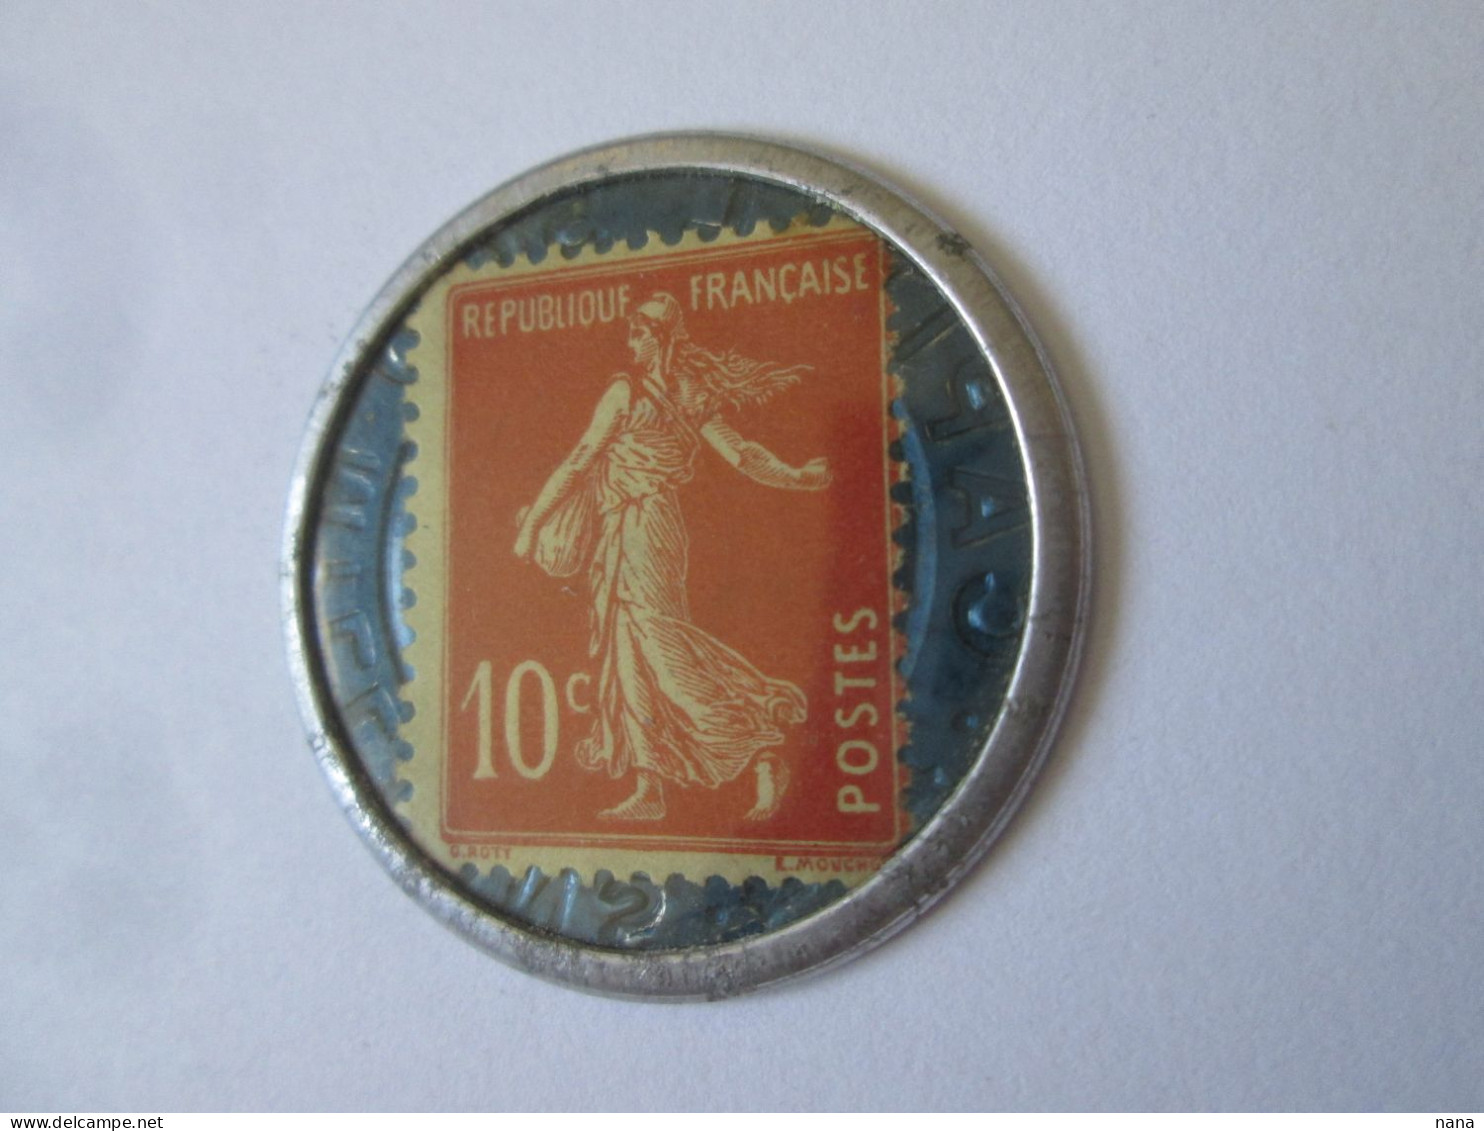 France:Timbre Monnaie 10 Centimes Societe Generale Neuf Vers 1920/Societe Generale 10 Centimes UNC Coin Stamp 1920s - Notgeld